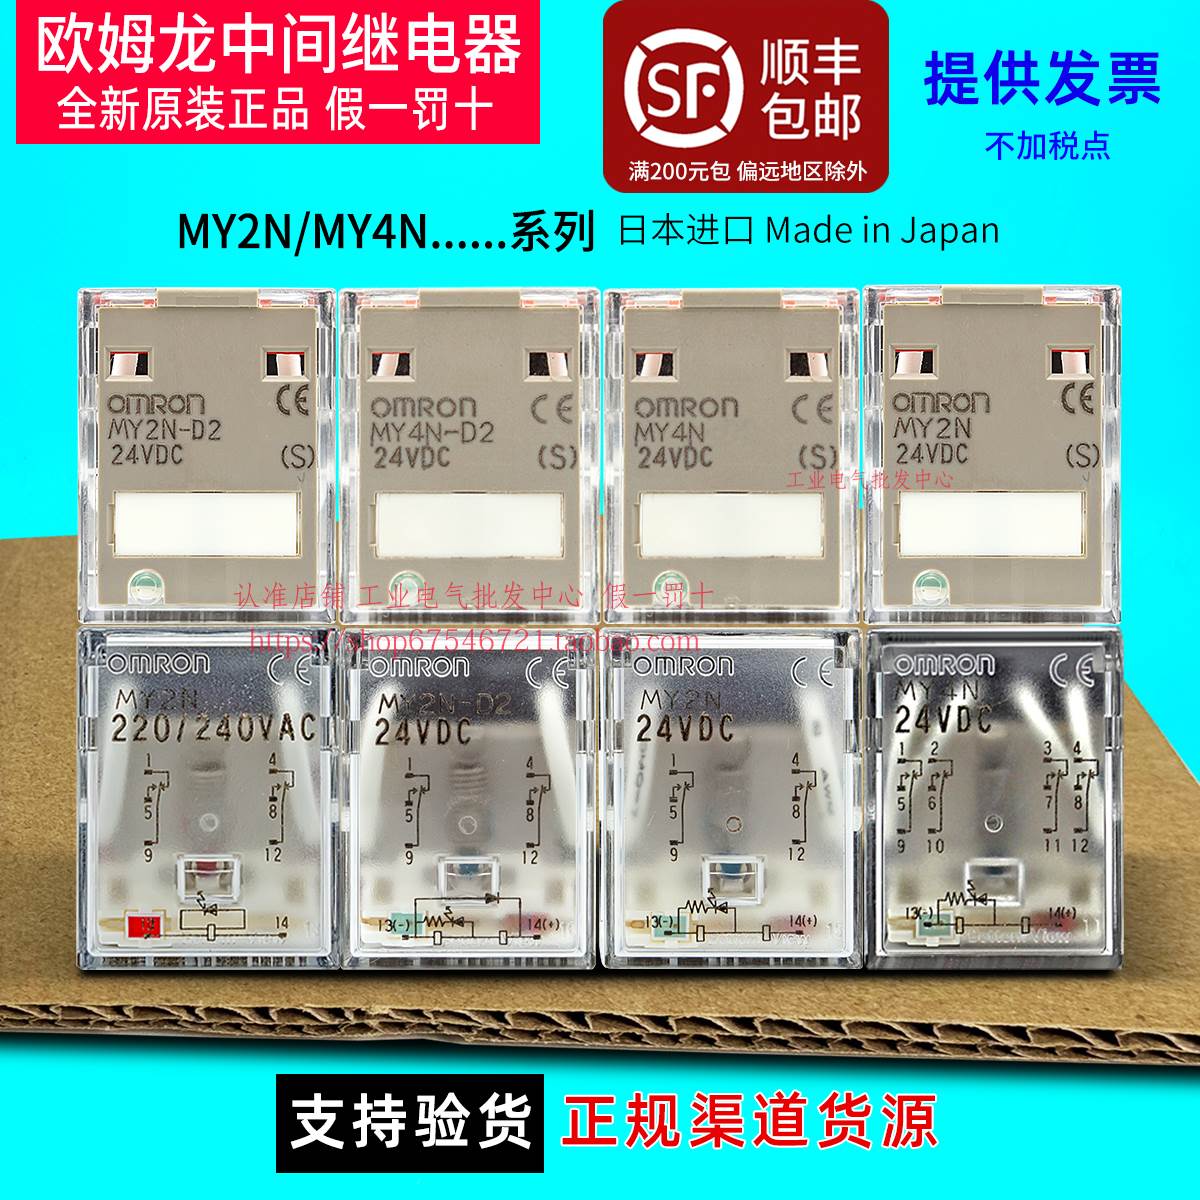 日本进口全新原装OMRON继电器MY4N-MY2N-D2 MY2N(S) AC220V DC24V 电子元器件市场 传感器 原图主图